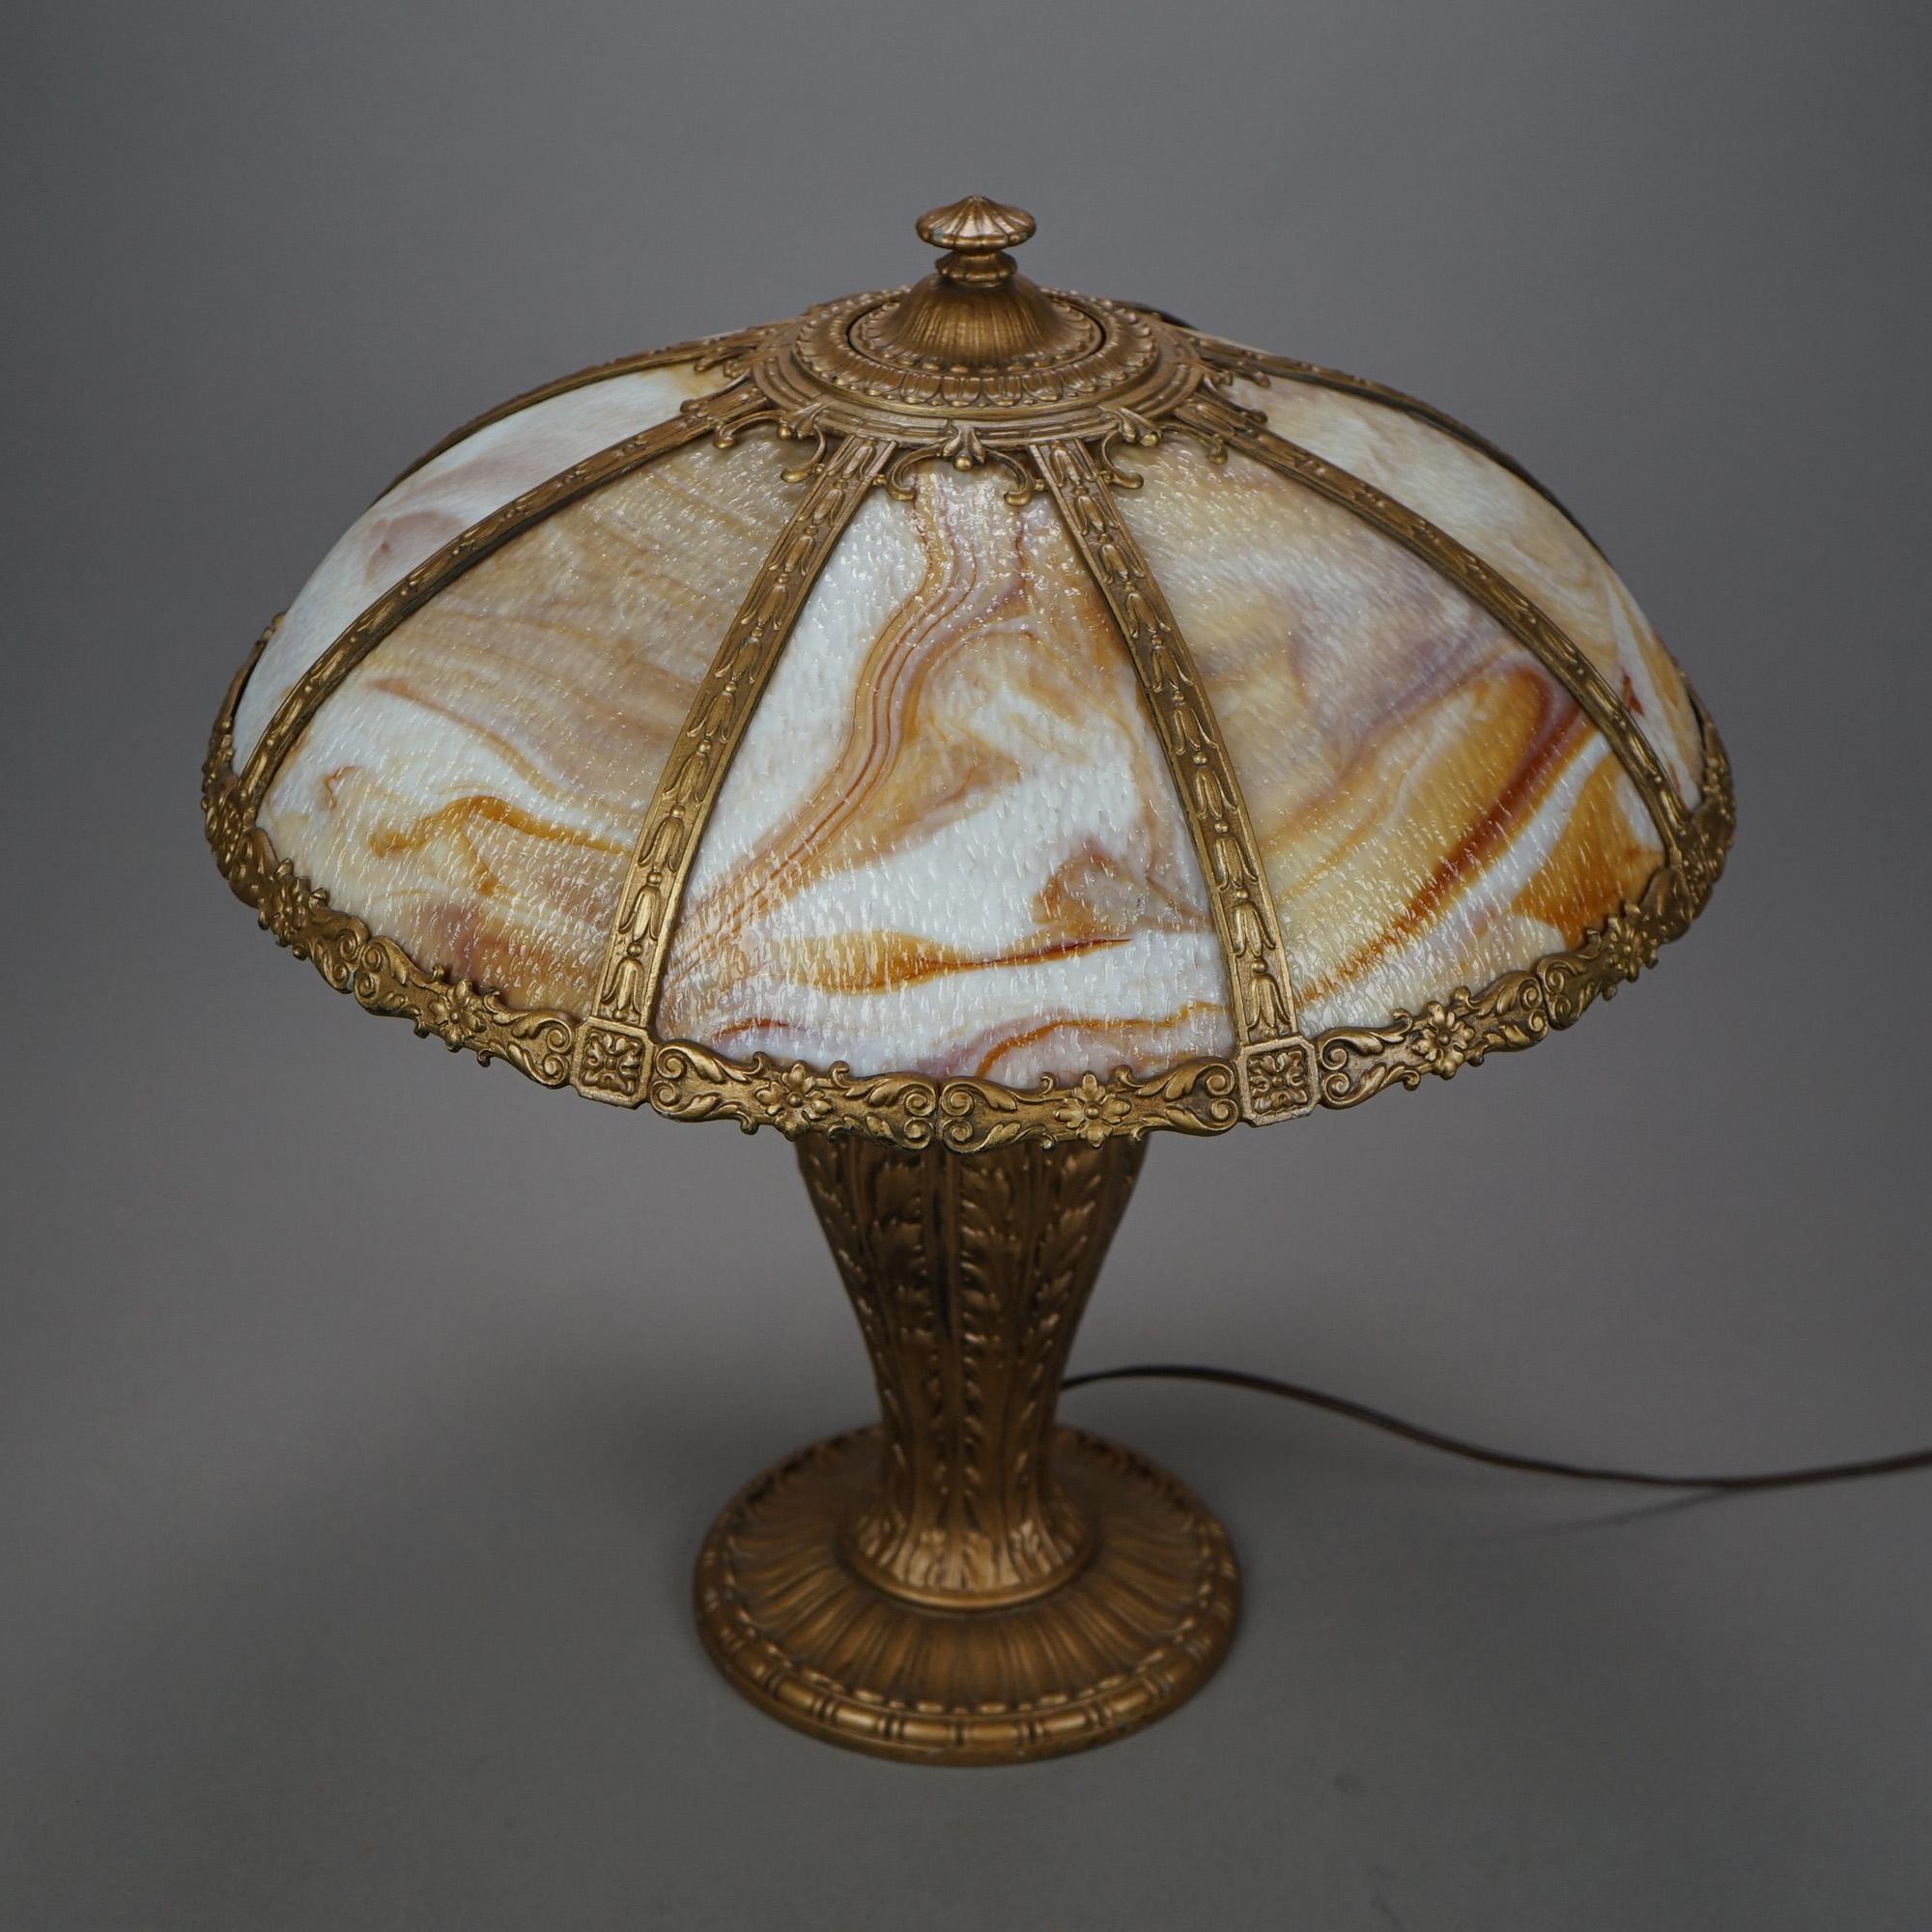 Une lampe de table antique Arts & Crafts de la manière de Bradley et Hubbard offre un cadre moulé avec une décoration florale et feuilletée et des panneaux en verre de scorie caramel plié sur une base en forme d'urne moulée à trois douilles avec des